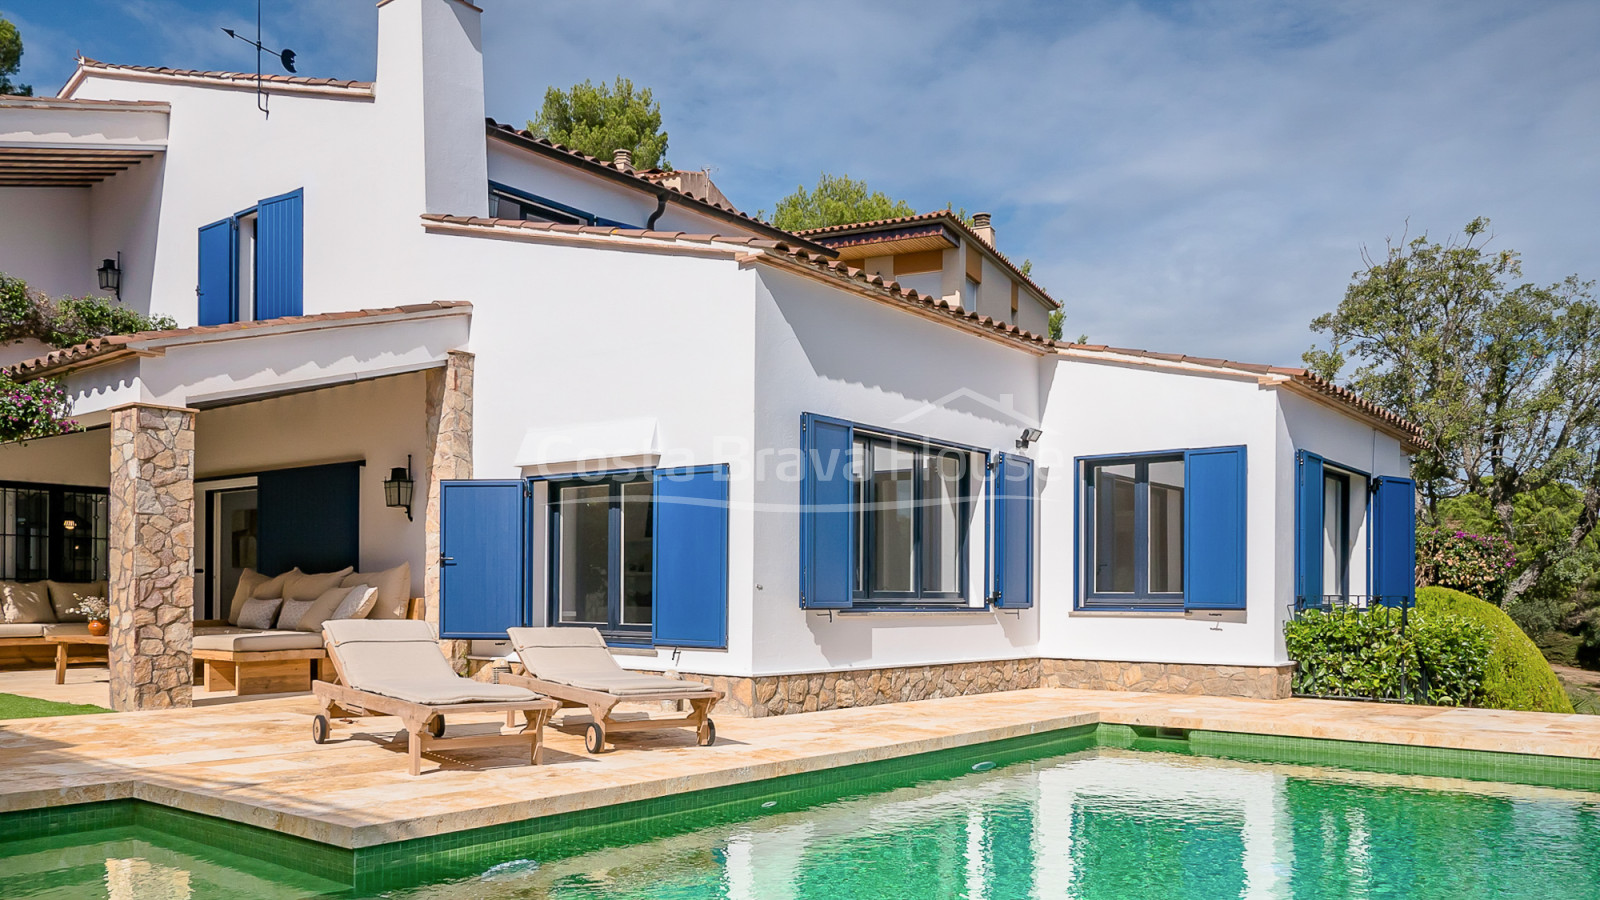 Villa elegante en Calella Palafrugell, 5 min playa, jardín y piscina